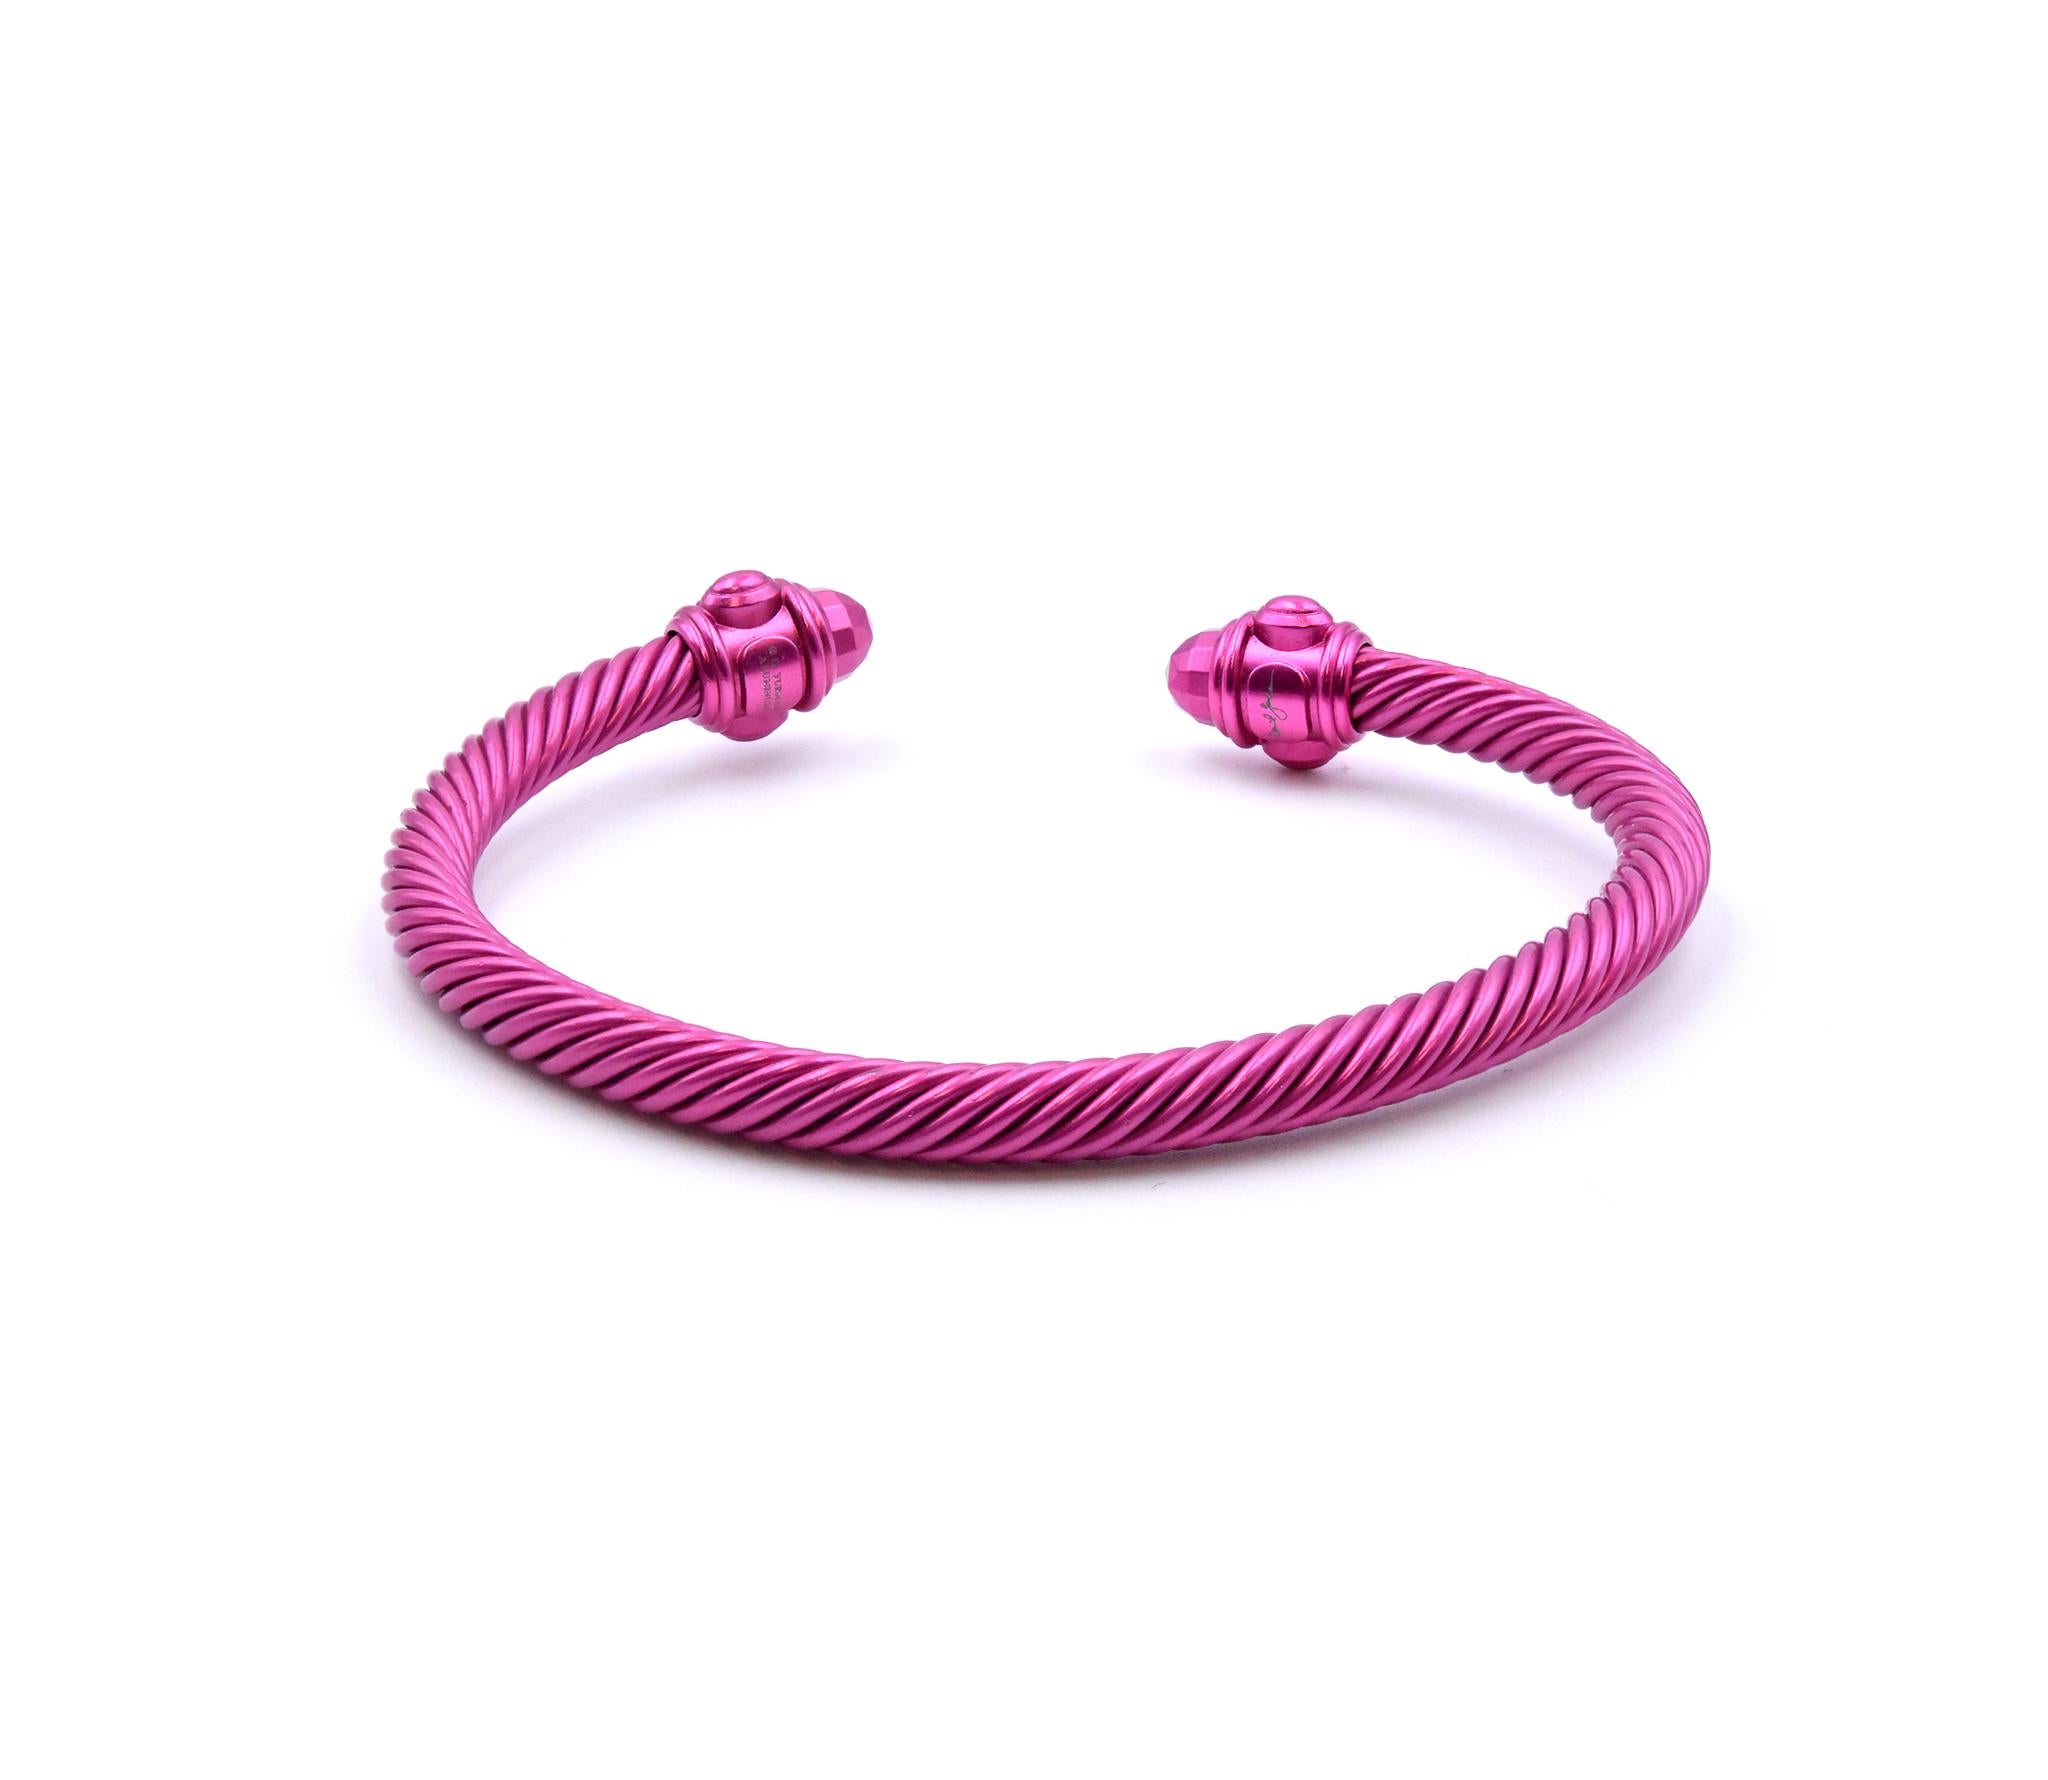 Designer: David Yurman
Material: Pink Aluminum 
Dimensions: bracelet measures 5mm
Weight: 7.68 grams

